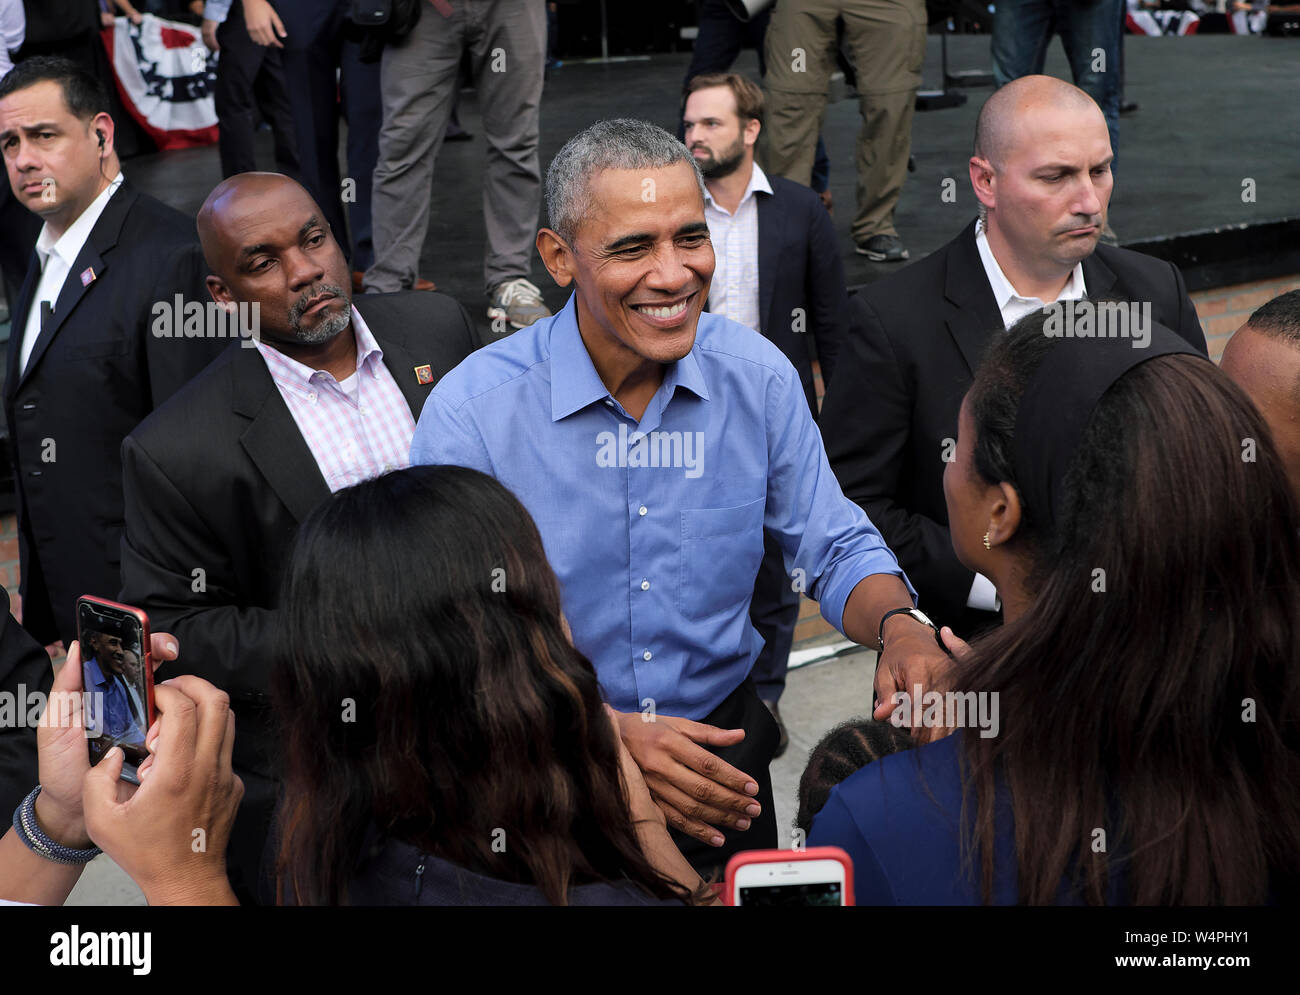 Präsident Barack Obama interagiert mit Teilnehmern während einer demokratischen Kundgebung an Dell Music Center in Philadelphia, Pennsylvania. Stockfoto